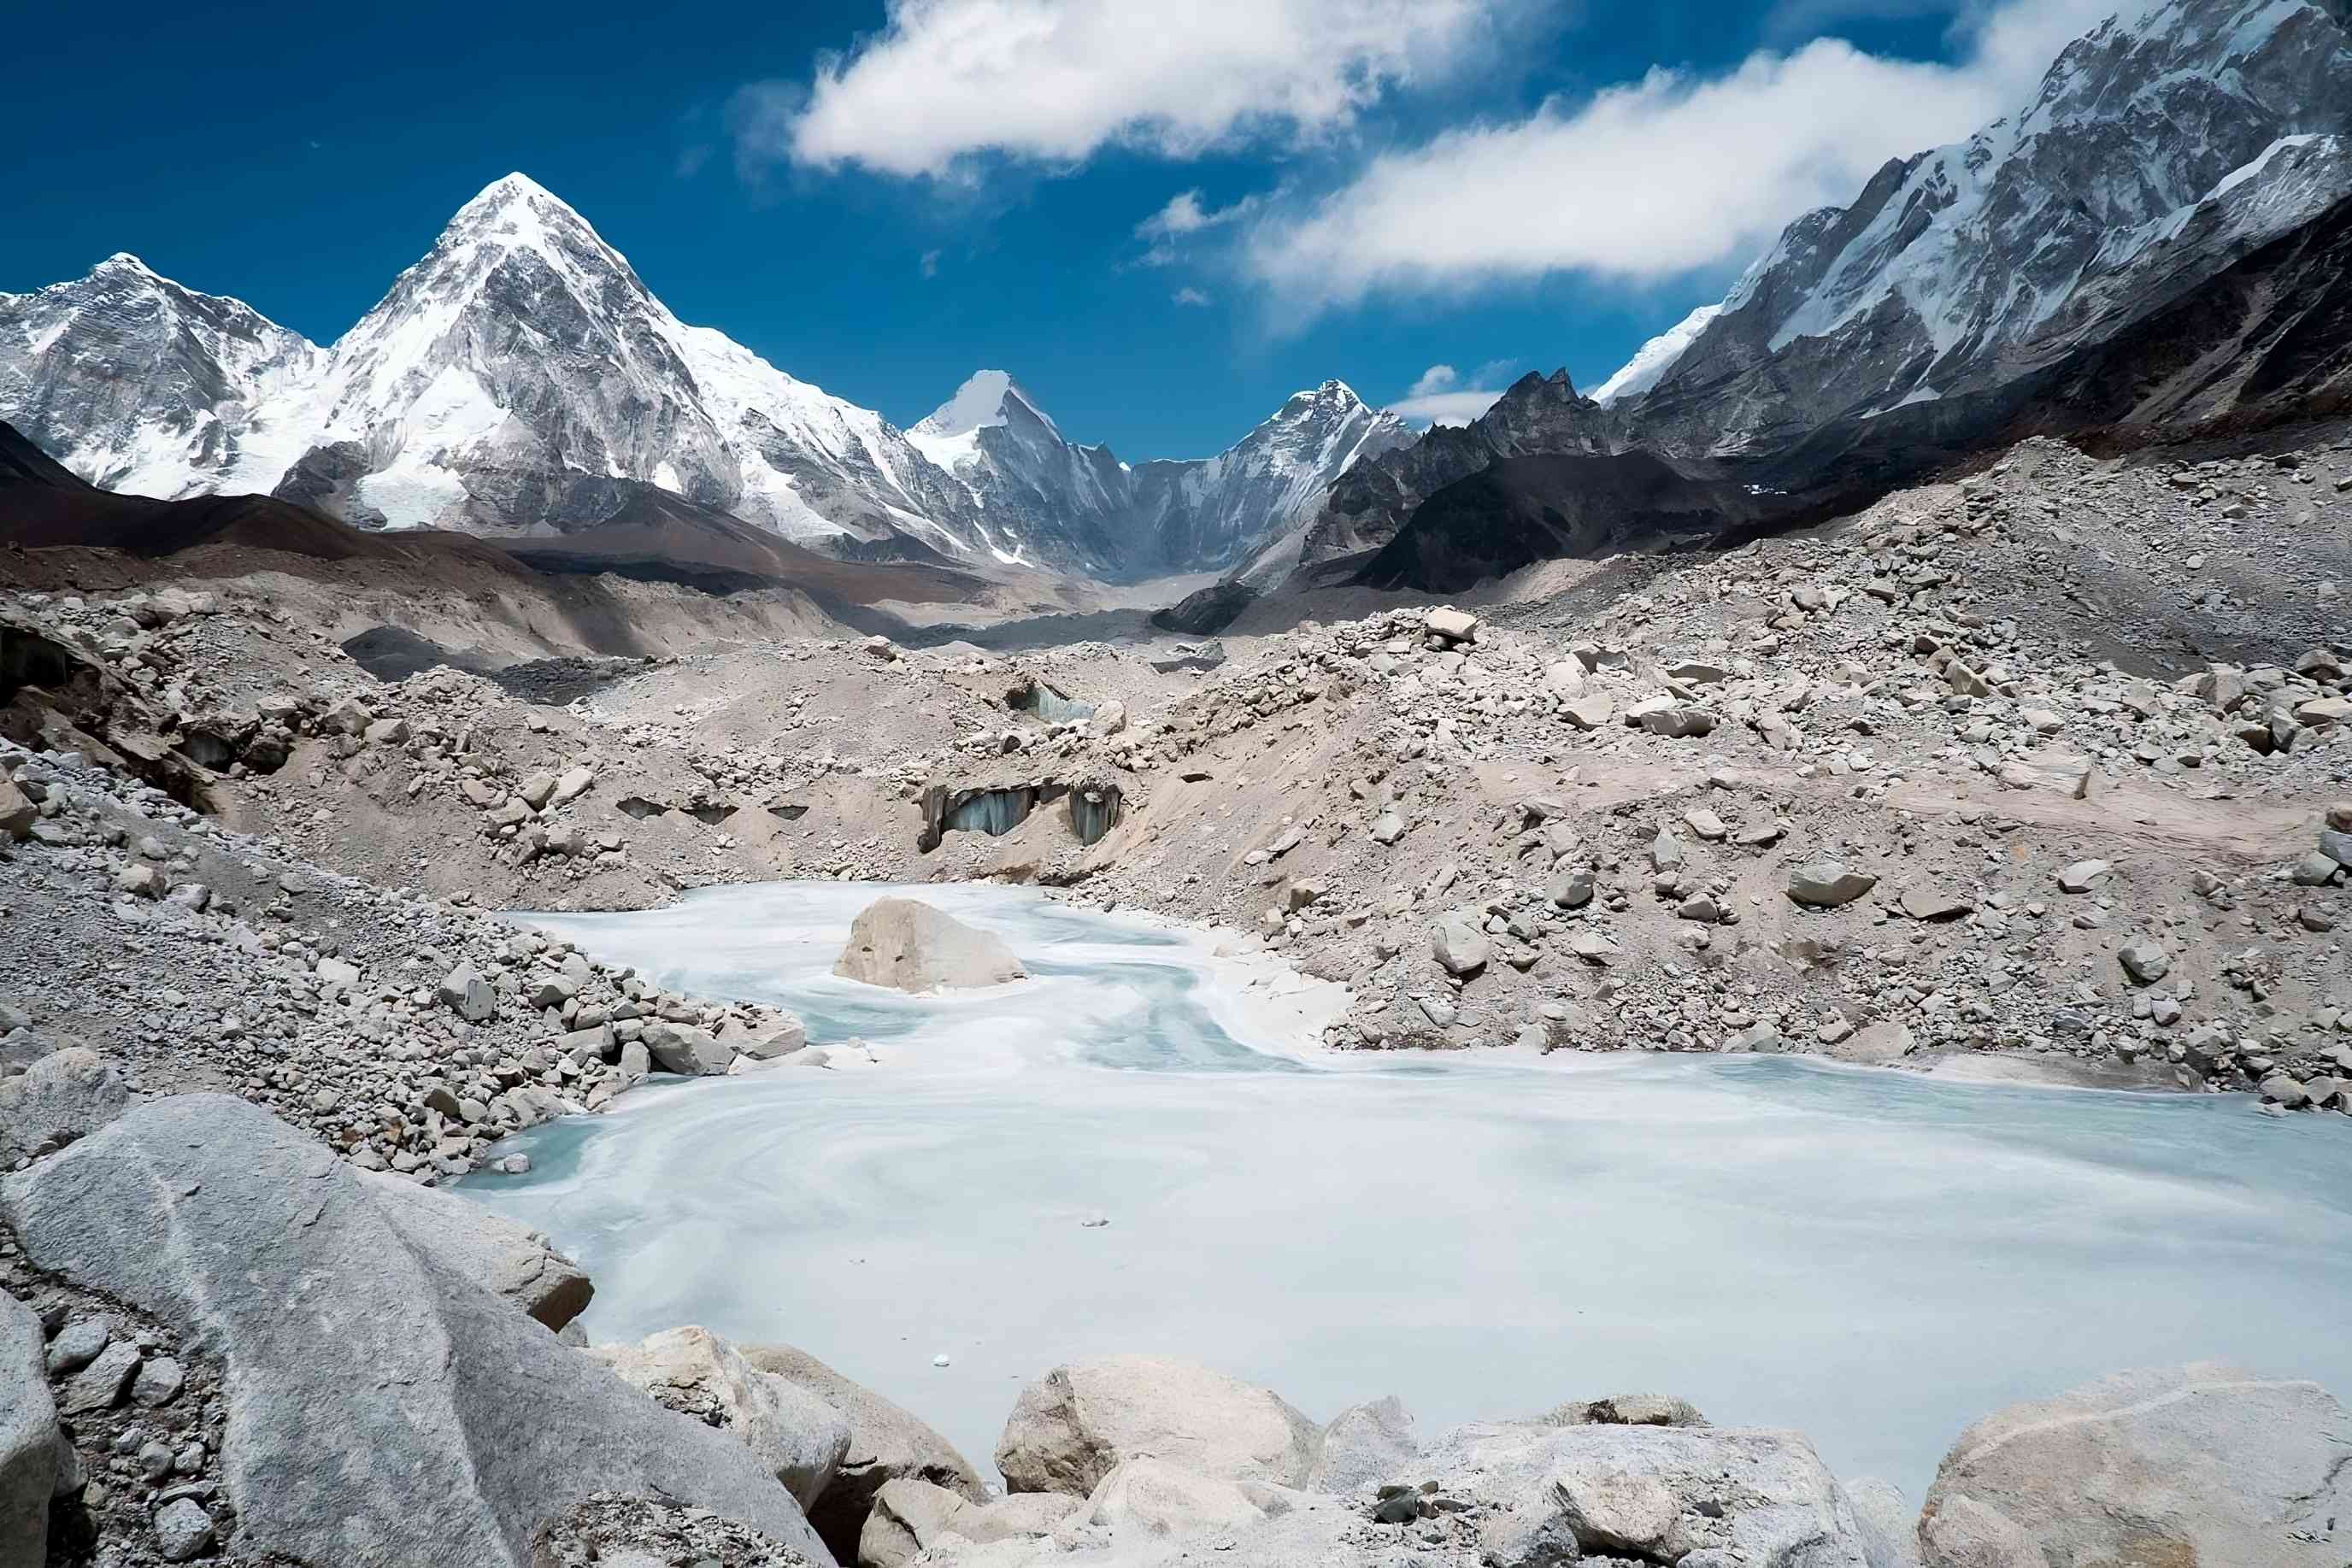 Frozen pond on the Khumbu Glacier, near Mount Everest, Himalayas, Nepal.